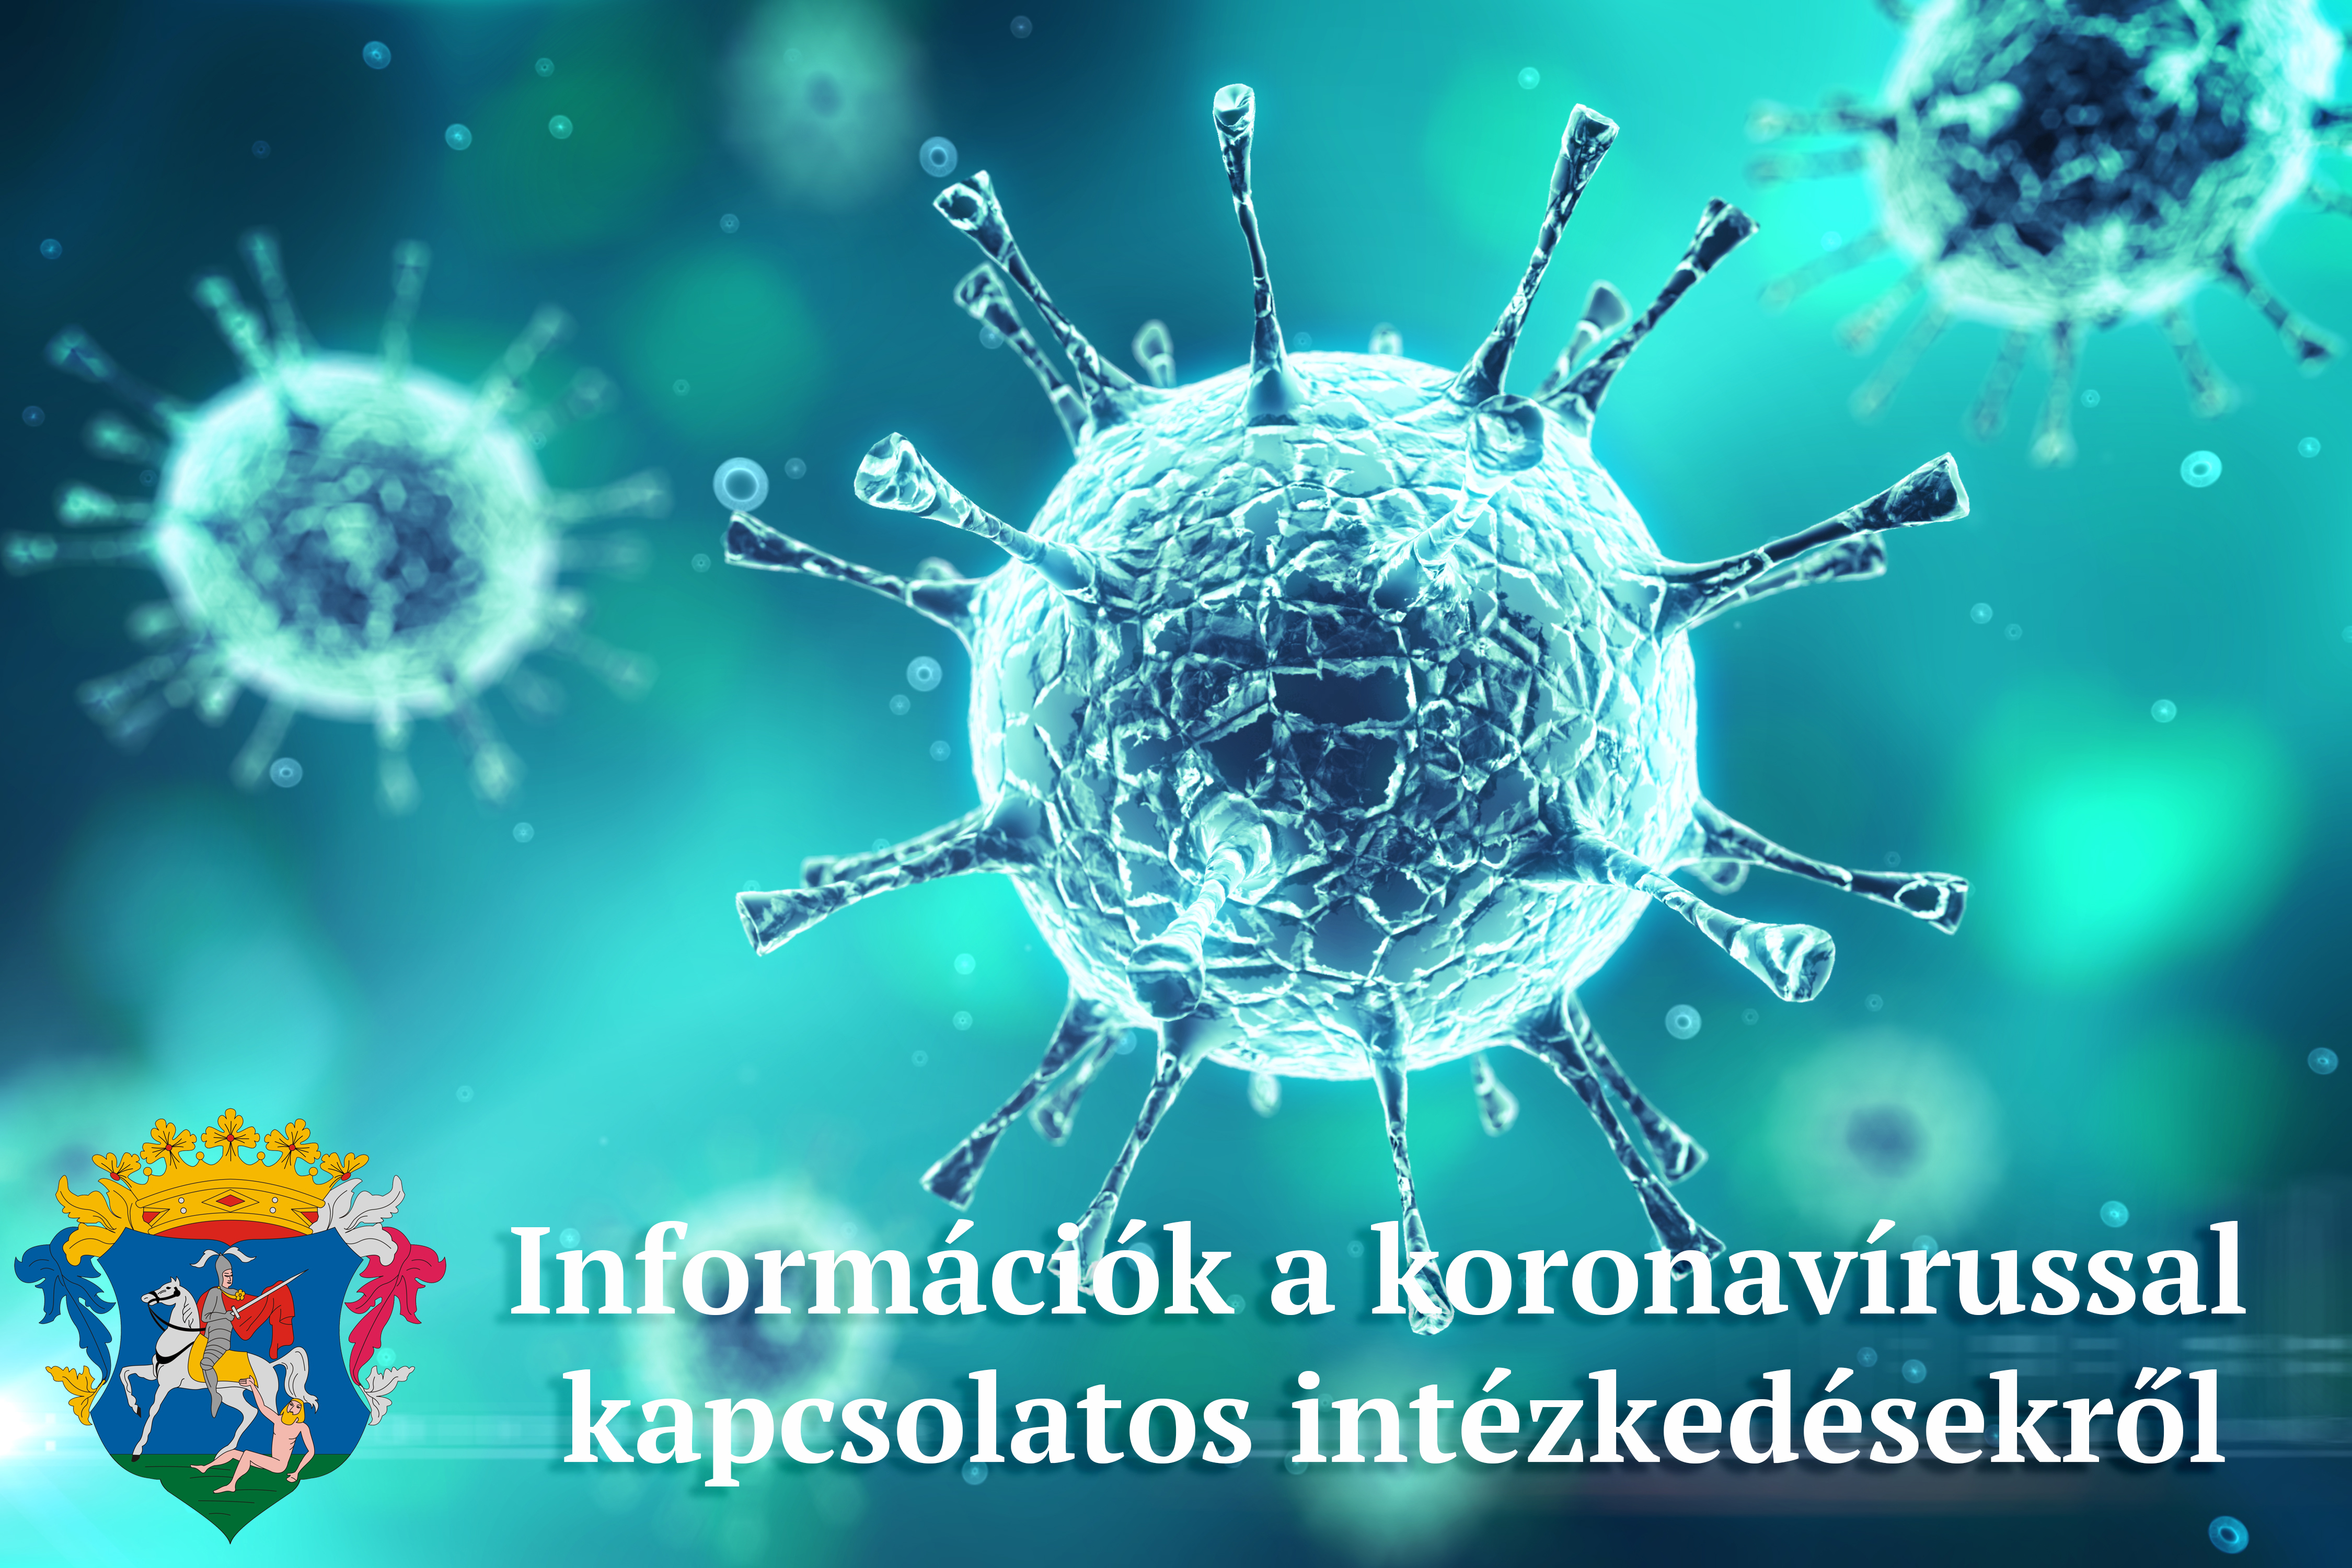 információk a koronavírussal kapcsolatos intézkedésekről, döntésekről 2021. február 15-17 között